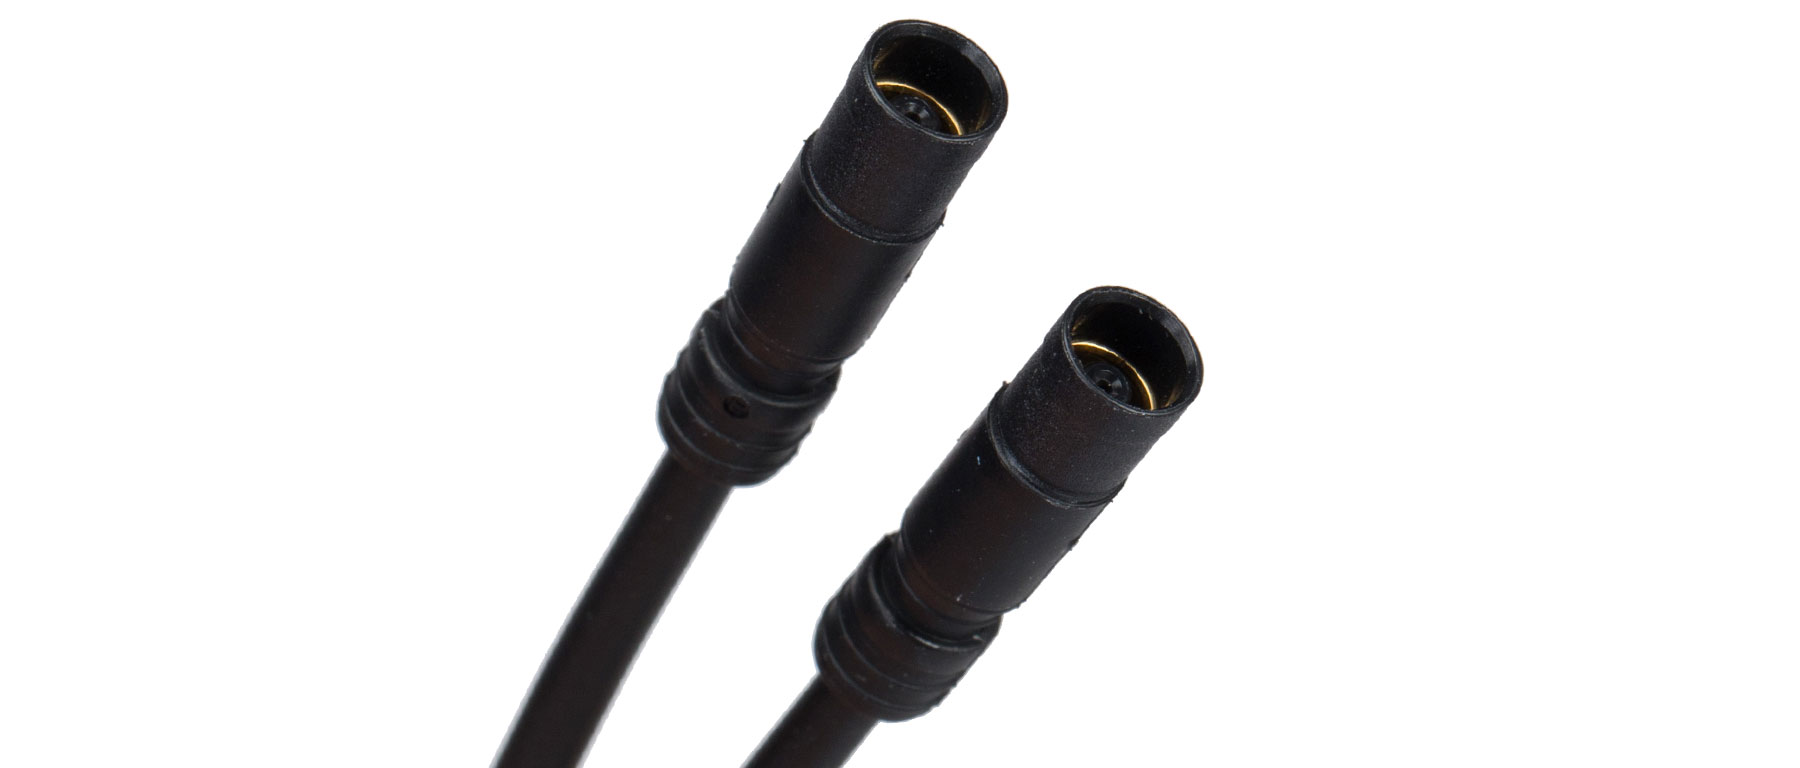 Shimano EW-SD50 E-tube Di2 electric wire MRRP £21.99 200mm 